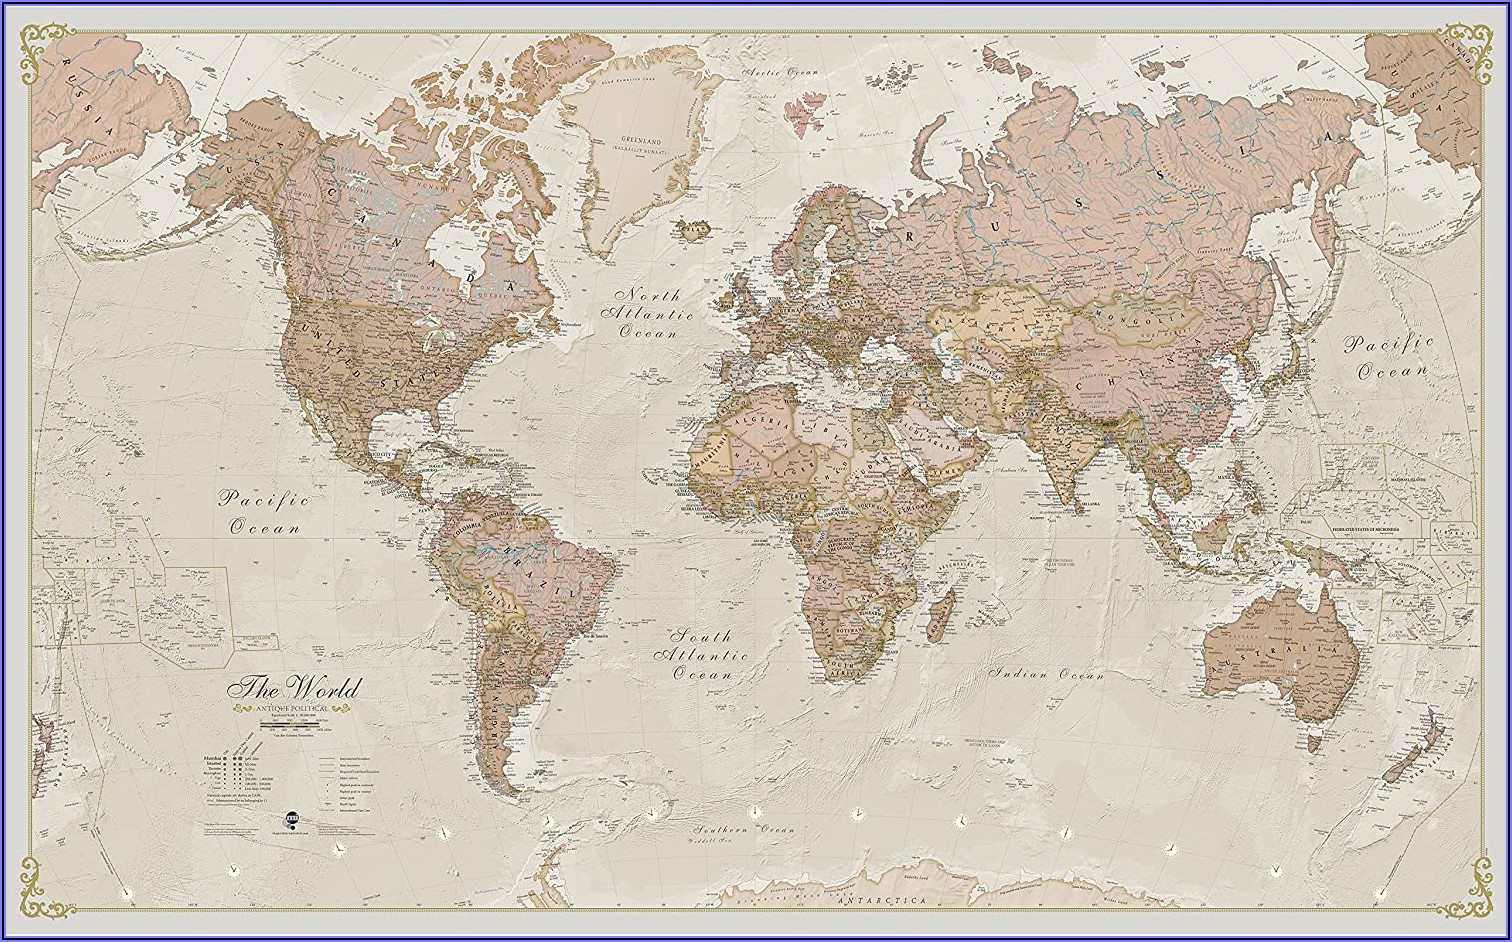 World Maps Laminated